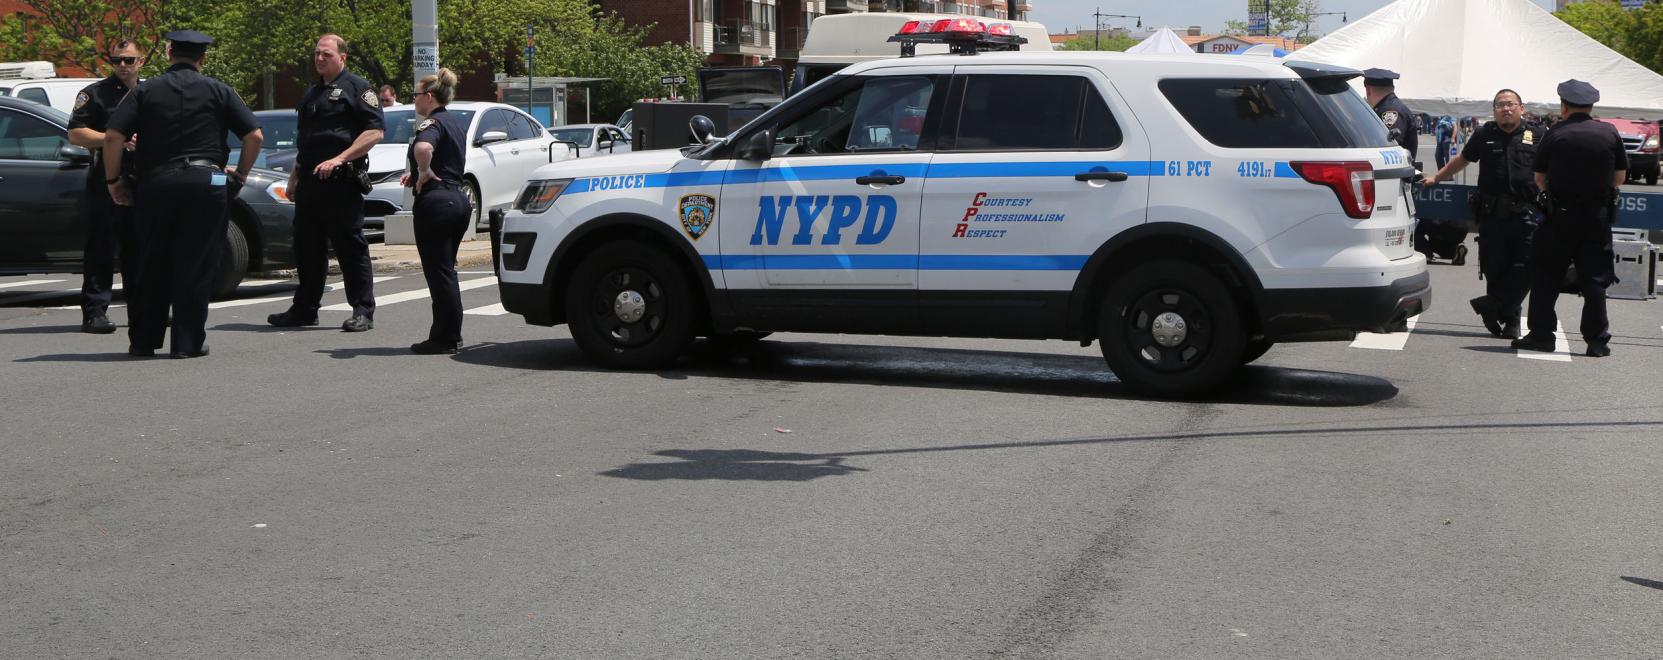 Mintafelismerő programmal dolgozik a New York-i rendőrség